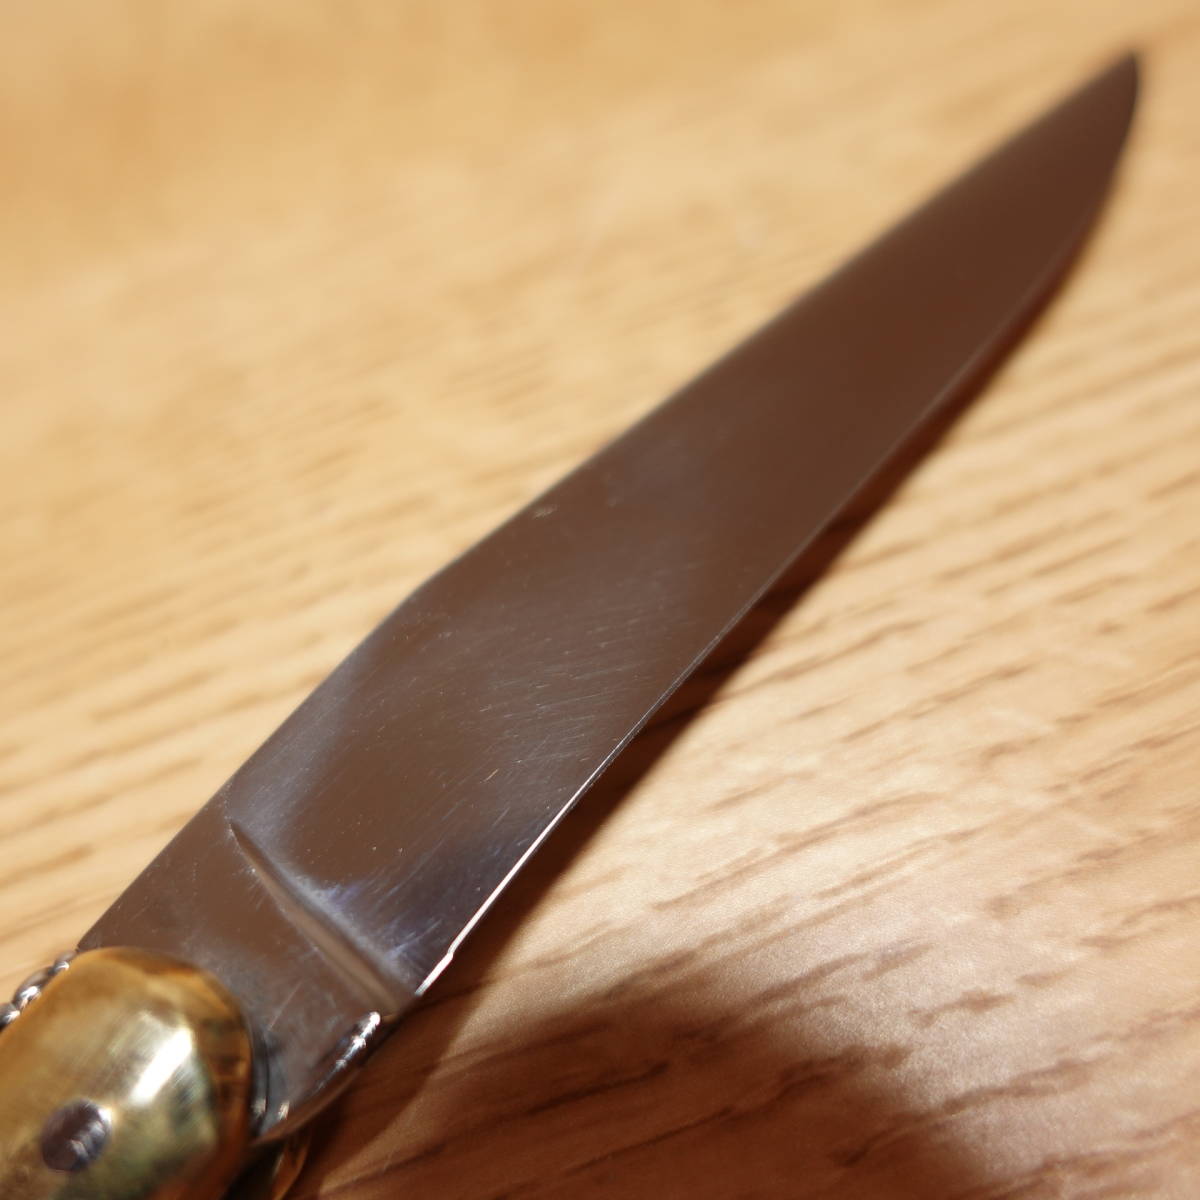 ライヨール ラギオール LOGマーク付 フォールディングナイフ 折りたたみ 茶色 ブラウン Laguiole 全長約205mm 刃渡り約90mm 刃厚約3mm